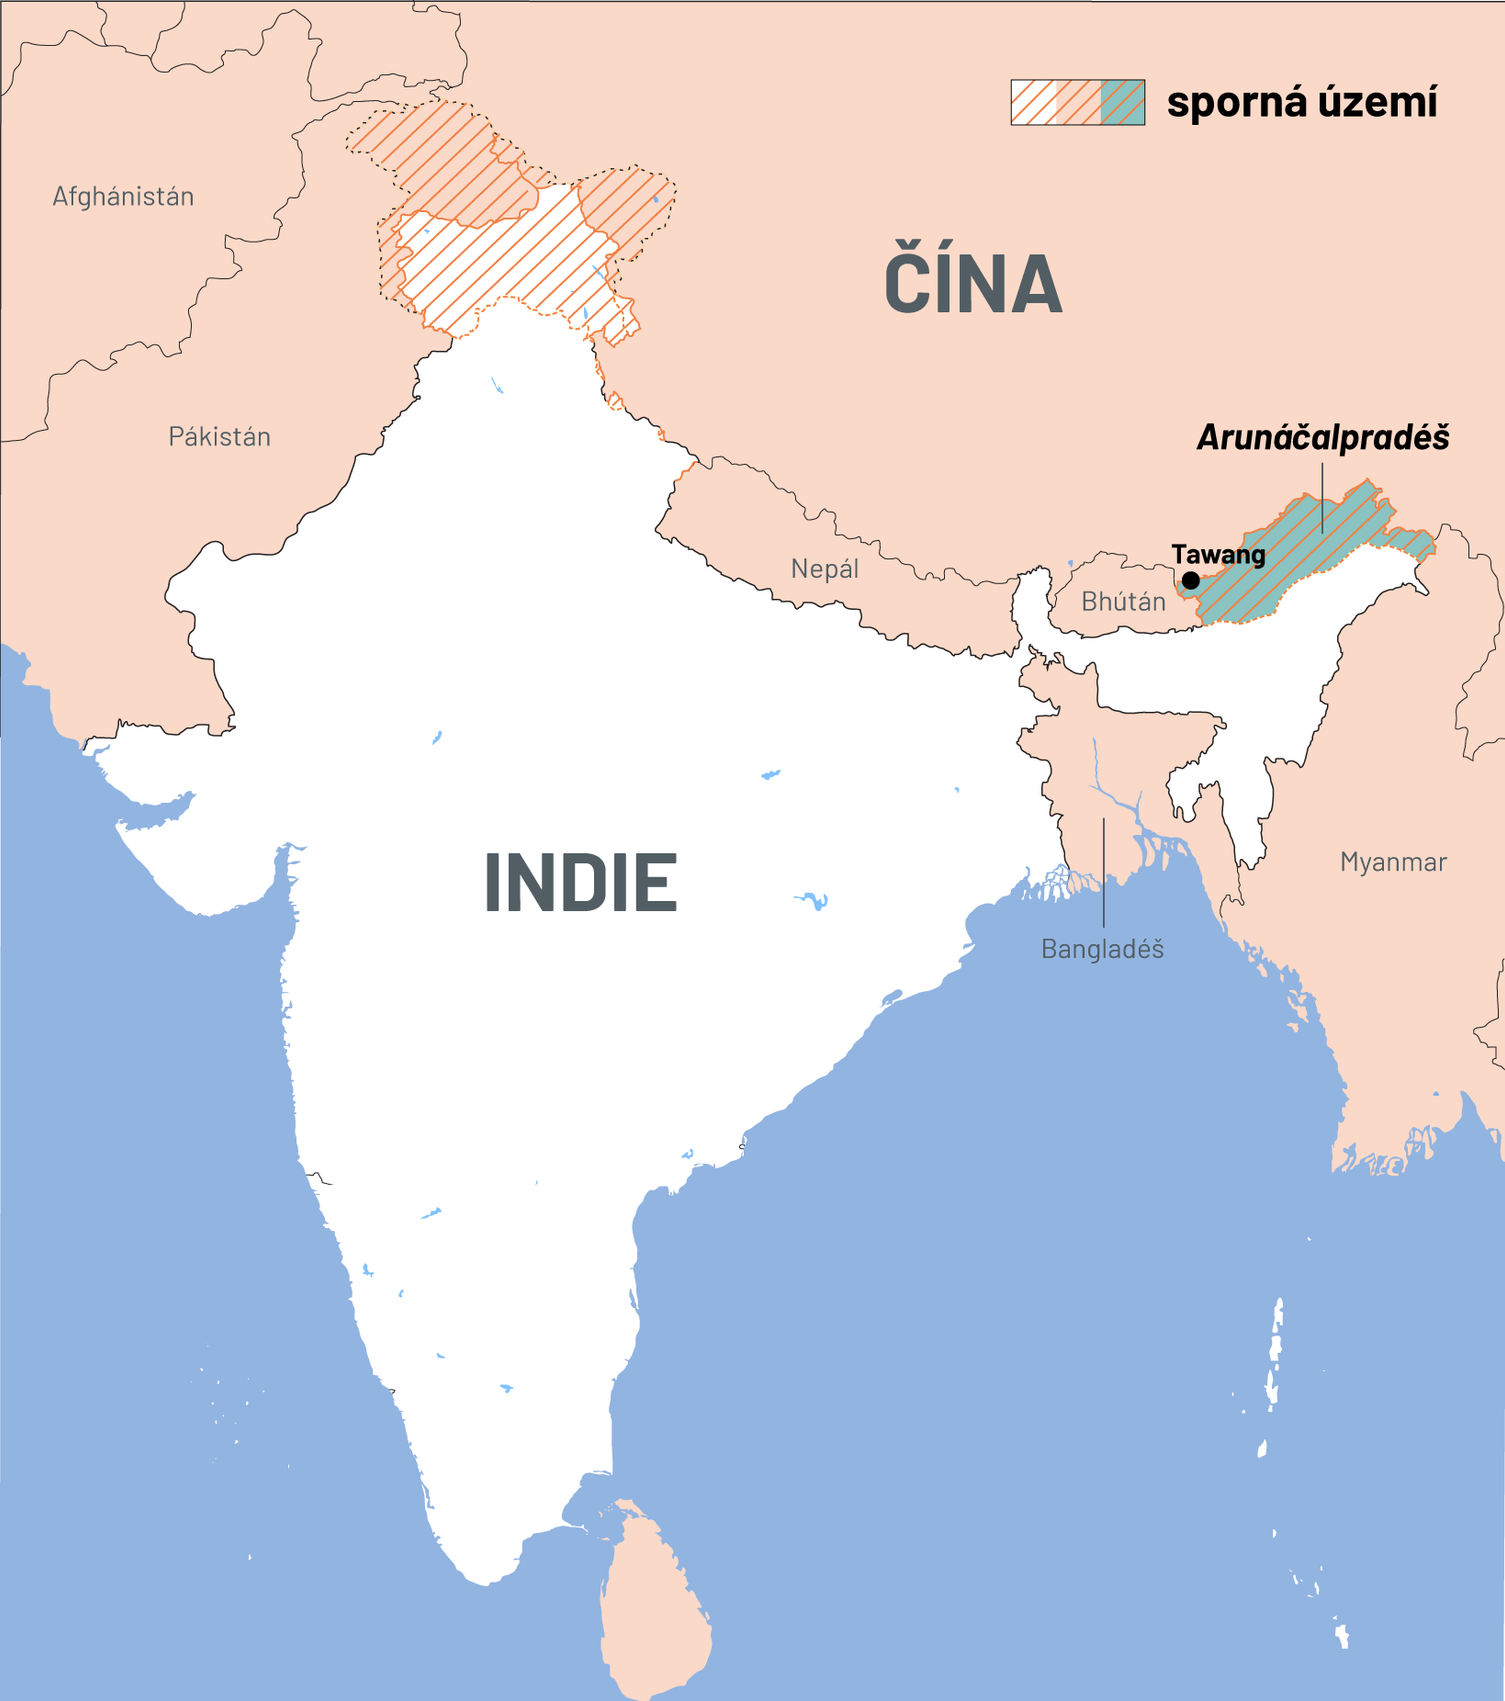 Sporná území na hranici Indie a Číny